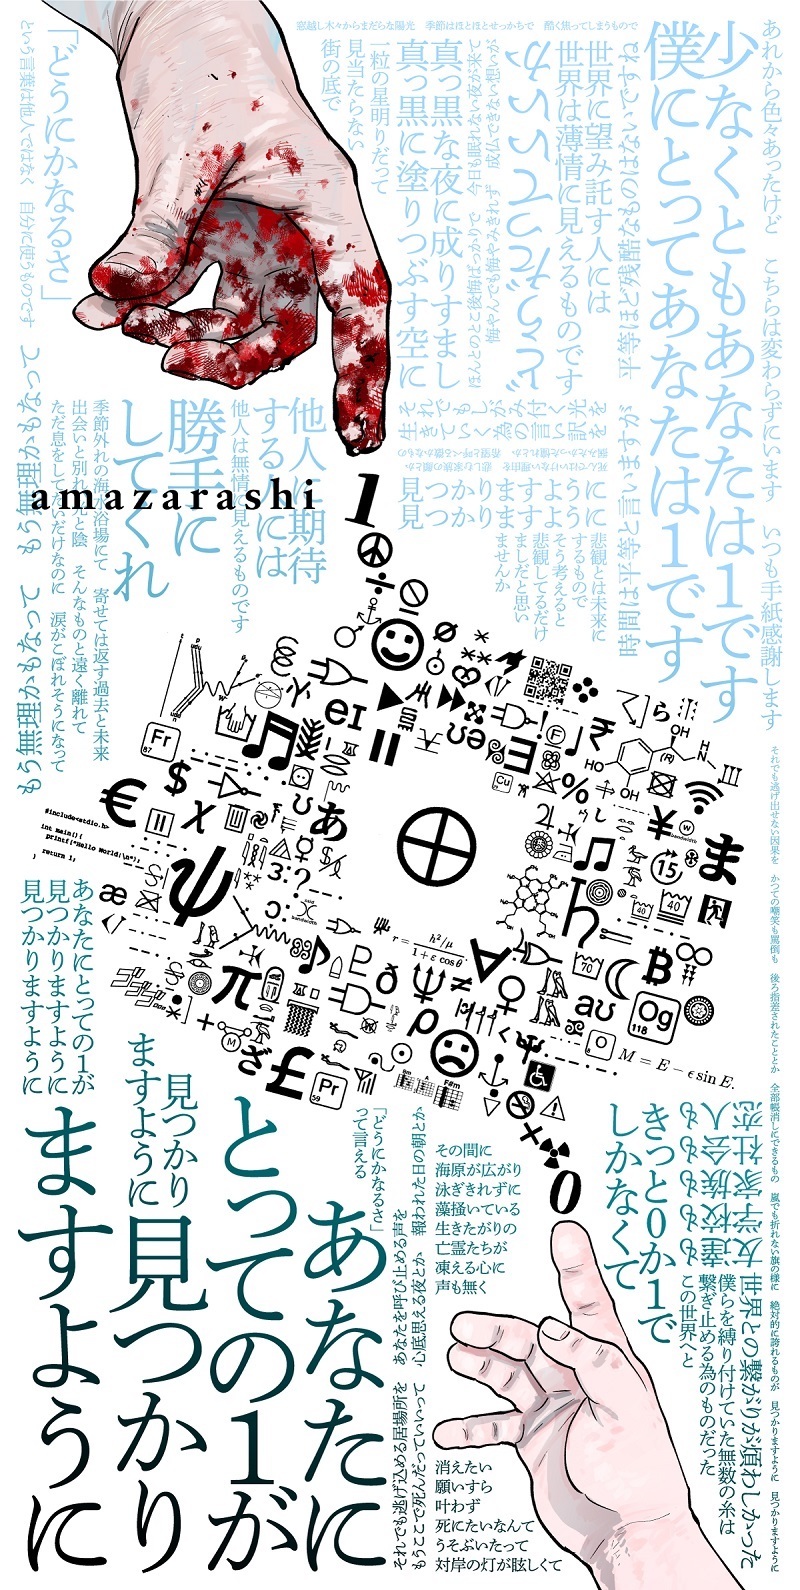 amazarashi×『チ。』コンセプトイラスト